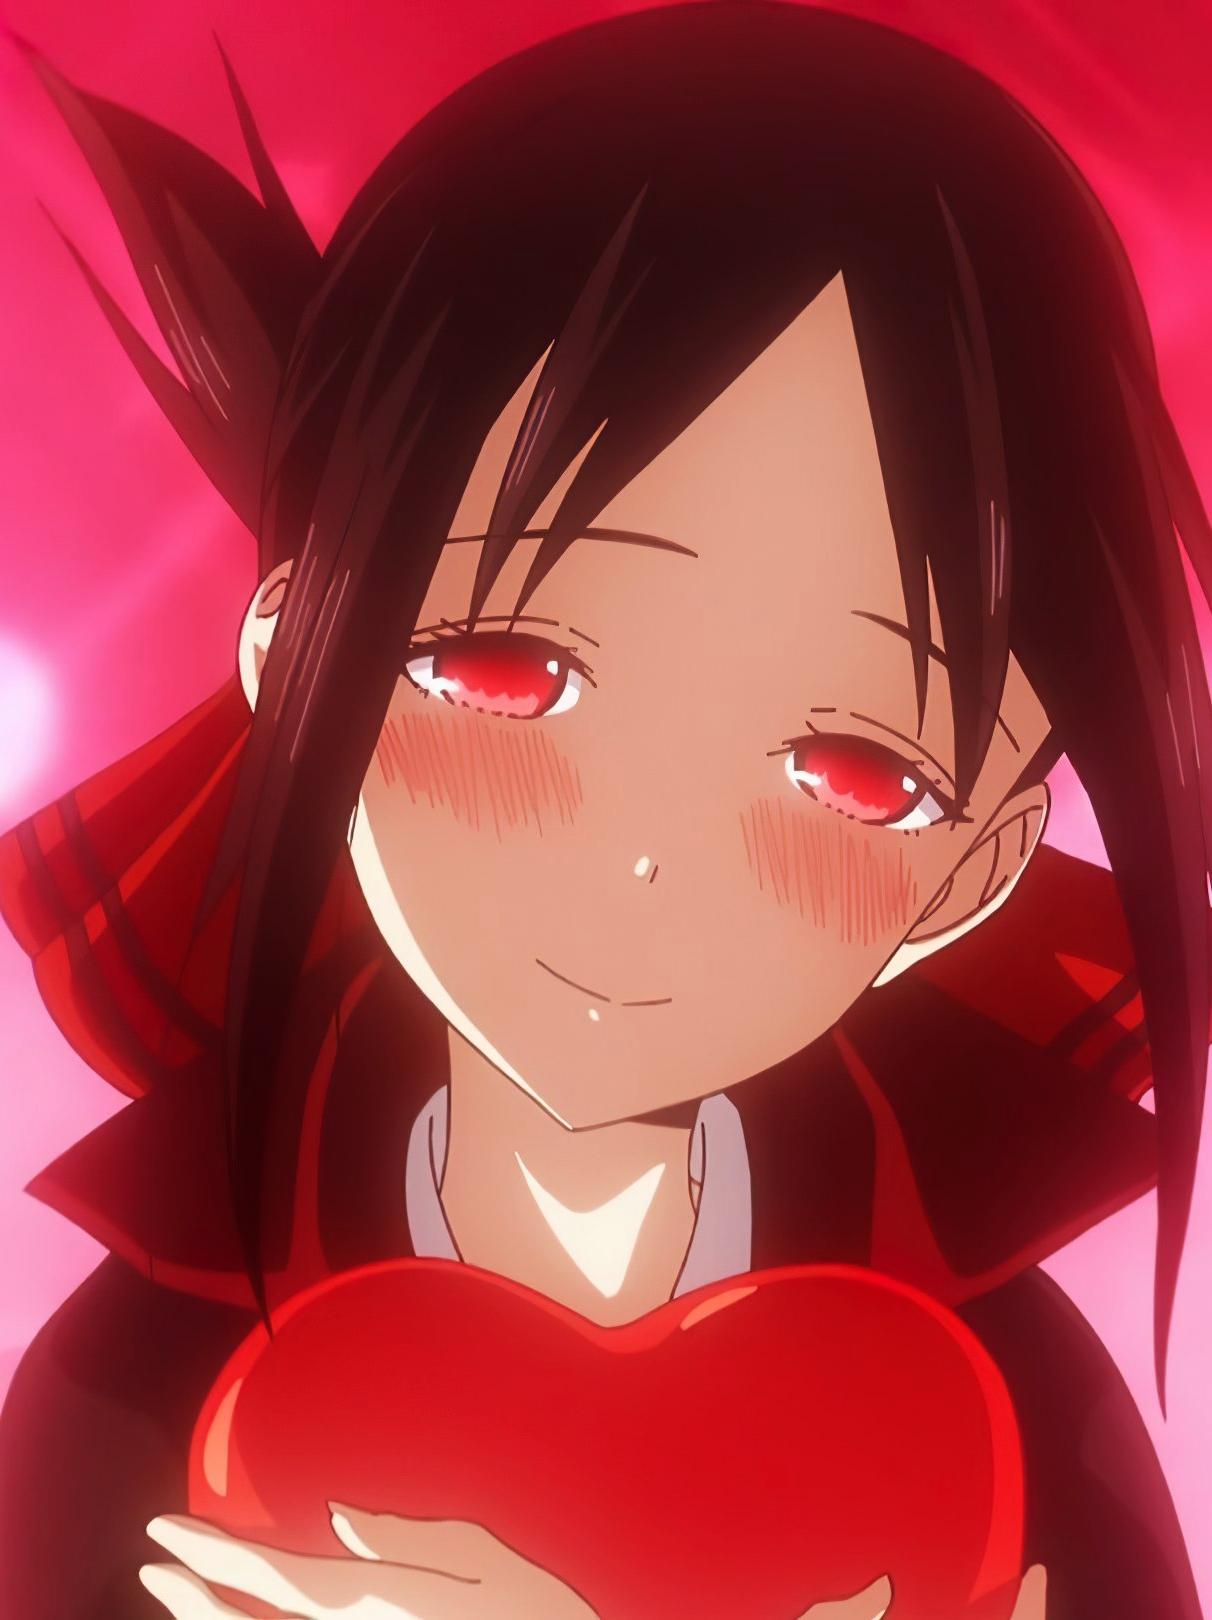 Kaguya-sama: Love is War supera a Fullmetal Alchemist y es el anime mejor  calificado